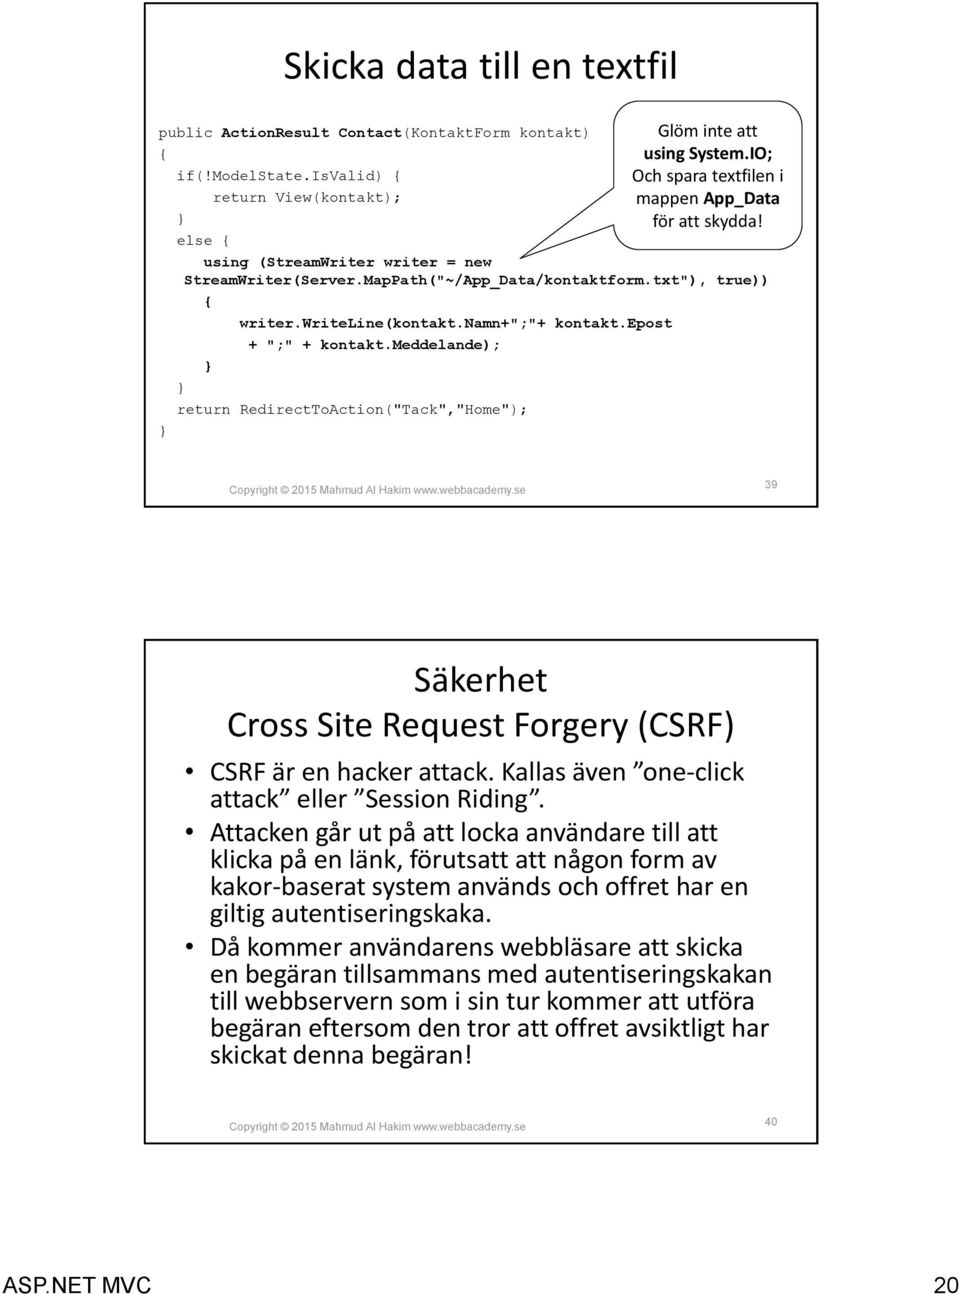 meddelande); return RedirectToAction("Tack","Home"); 39 Säkerhet Cross Site Request Forgery (CSRF) CSRF är en hacker attack. Kallas även one-click attack eller Session Riding.